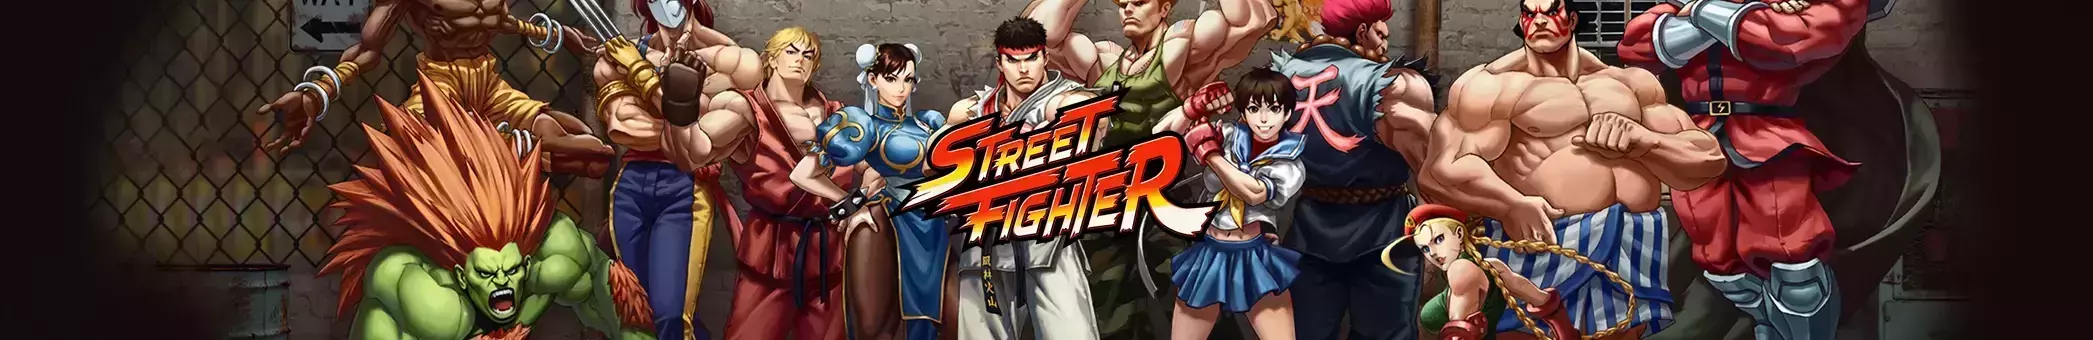 Street Fighter Digital Edition